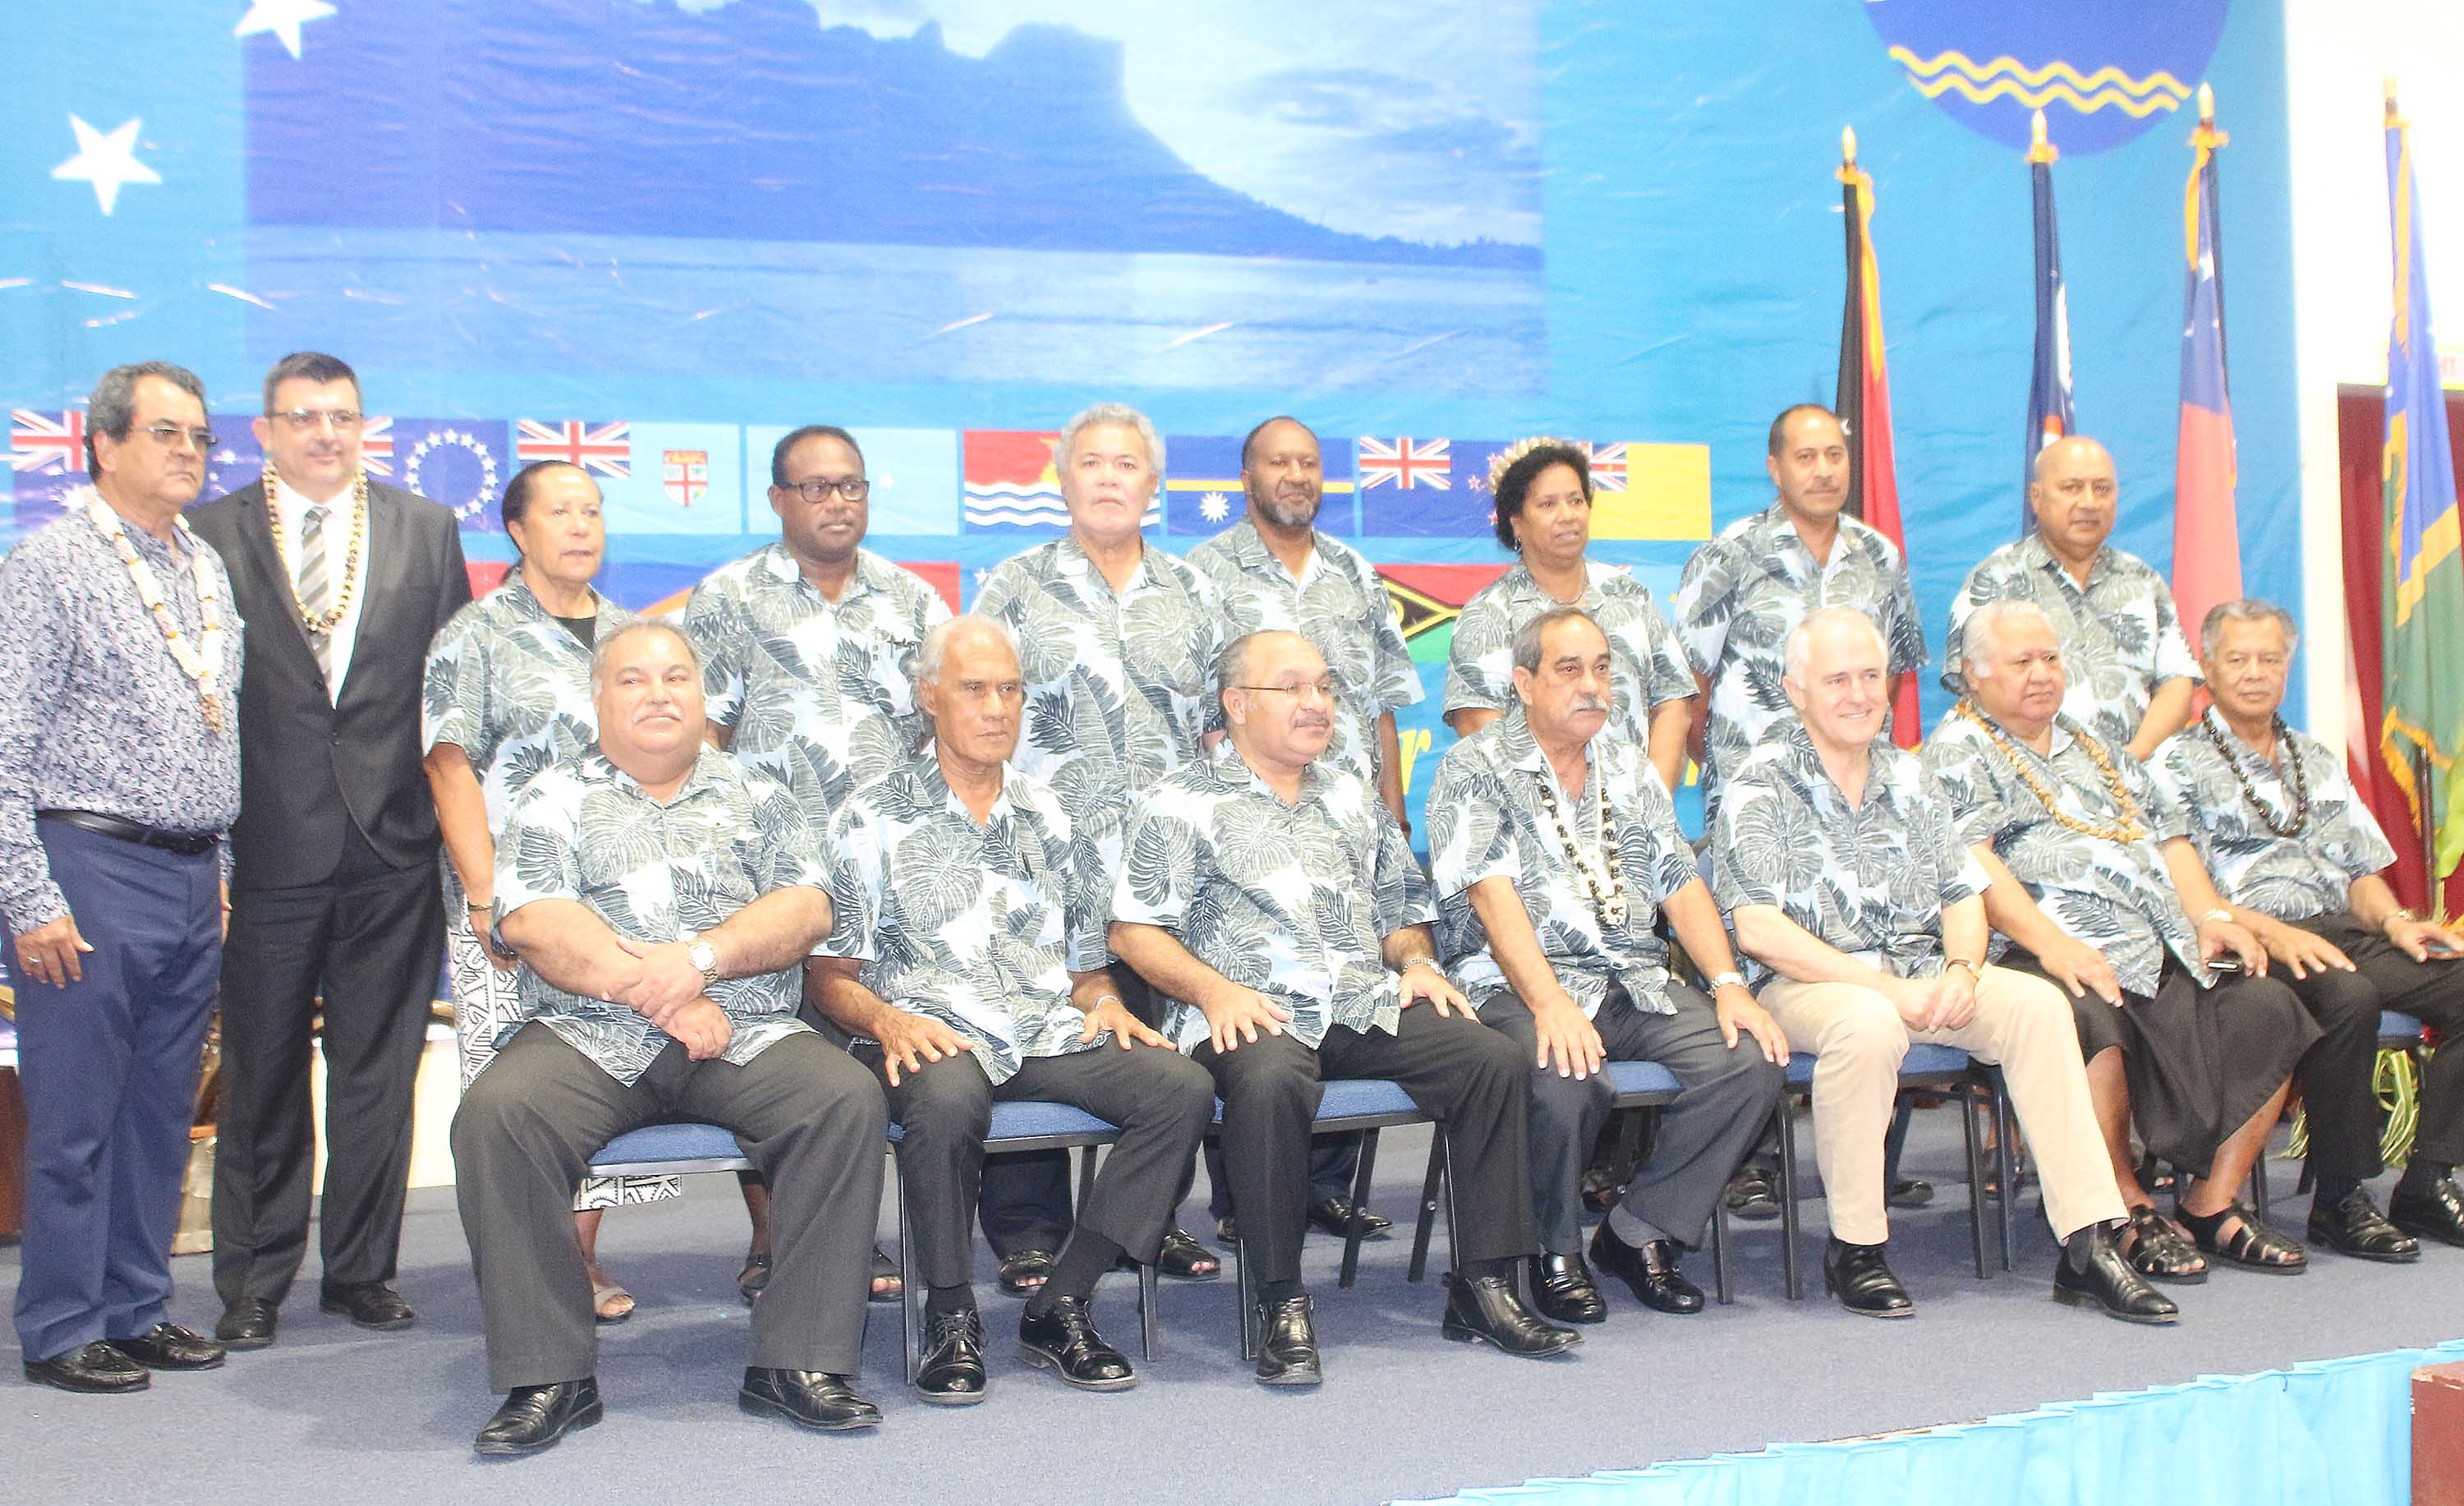 Le Forum des îles du Pacifique en 2016, lors de l'admission de l'adhésion de la Polynésie française.